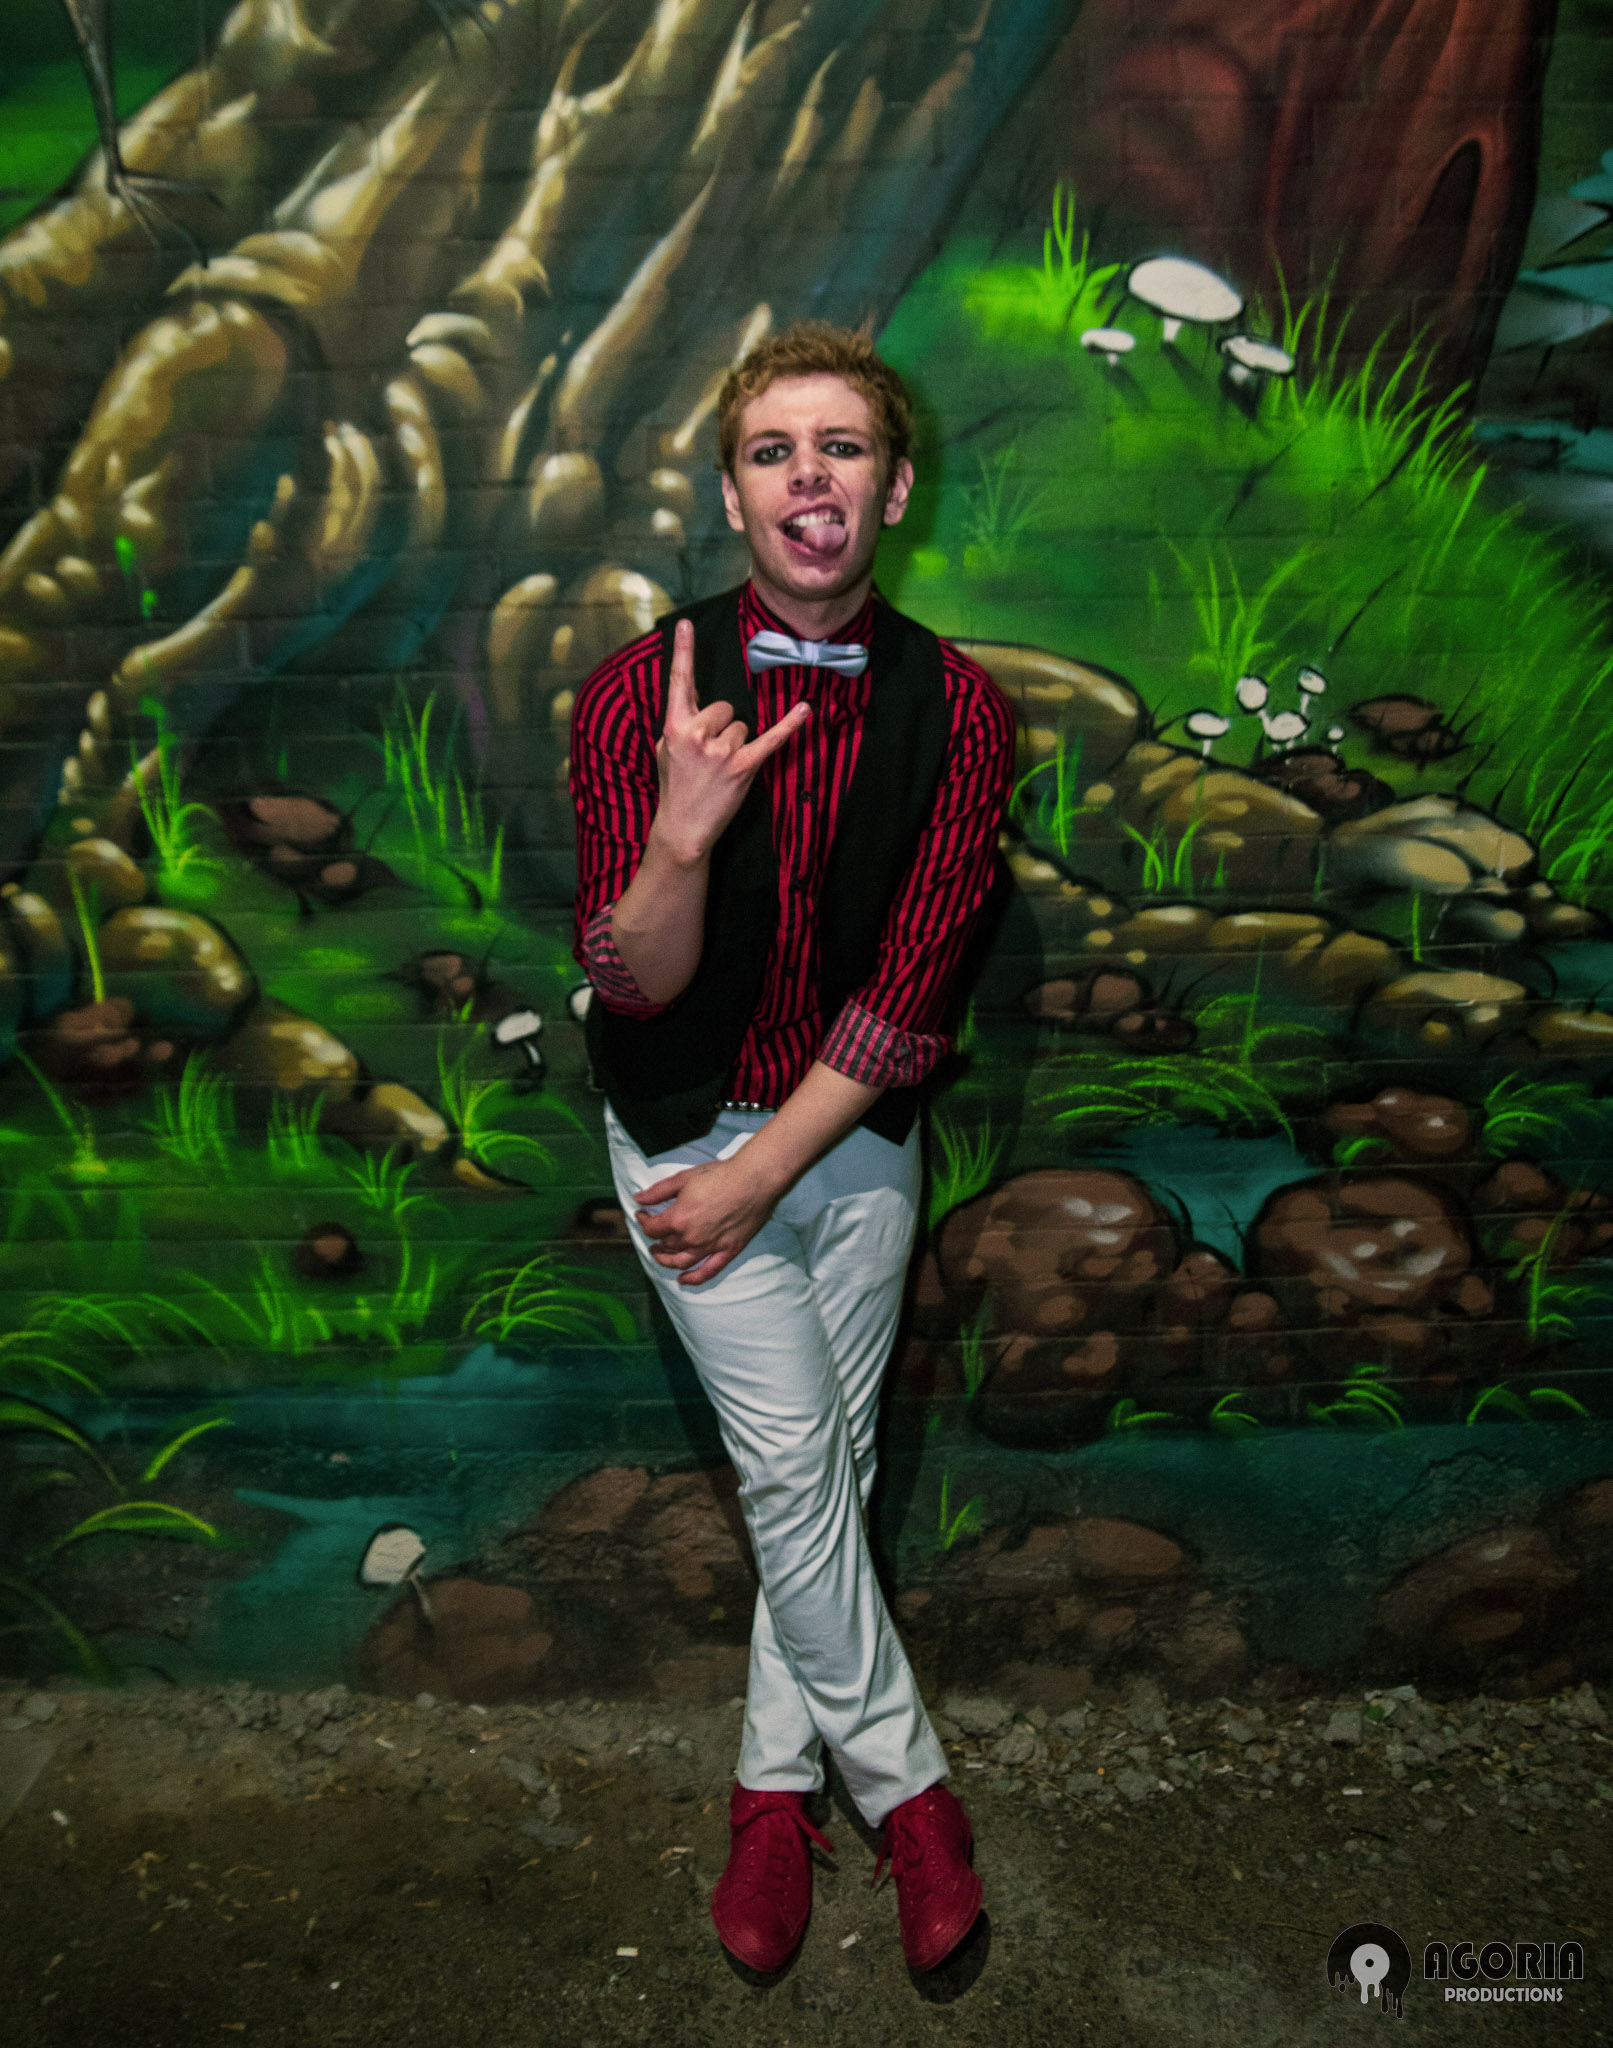 Fluffio Ryan Preiano posed infront of graffiti wall